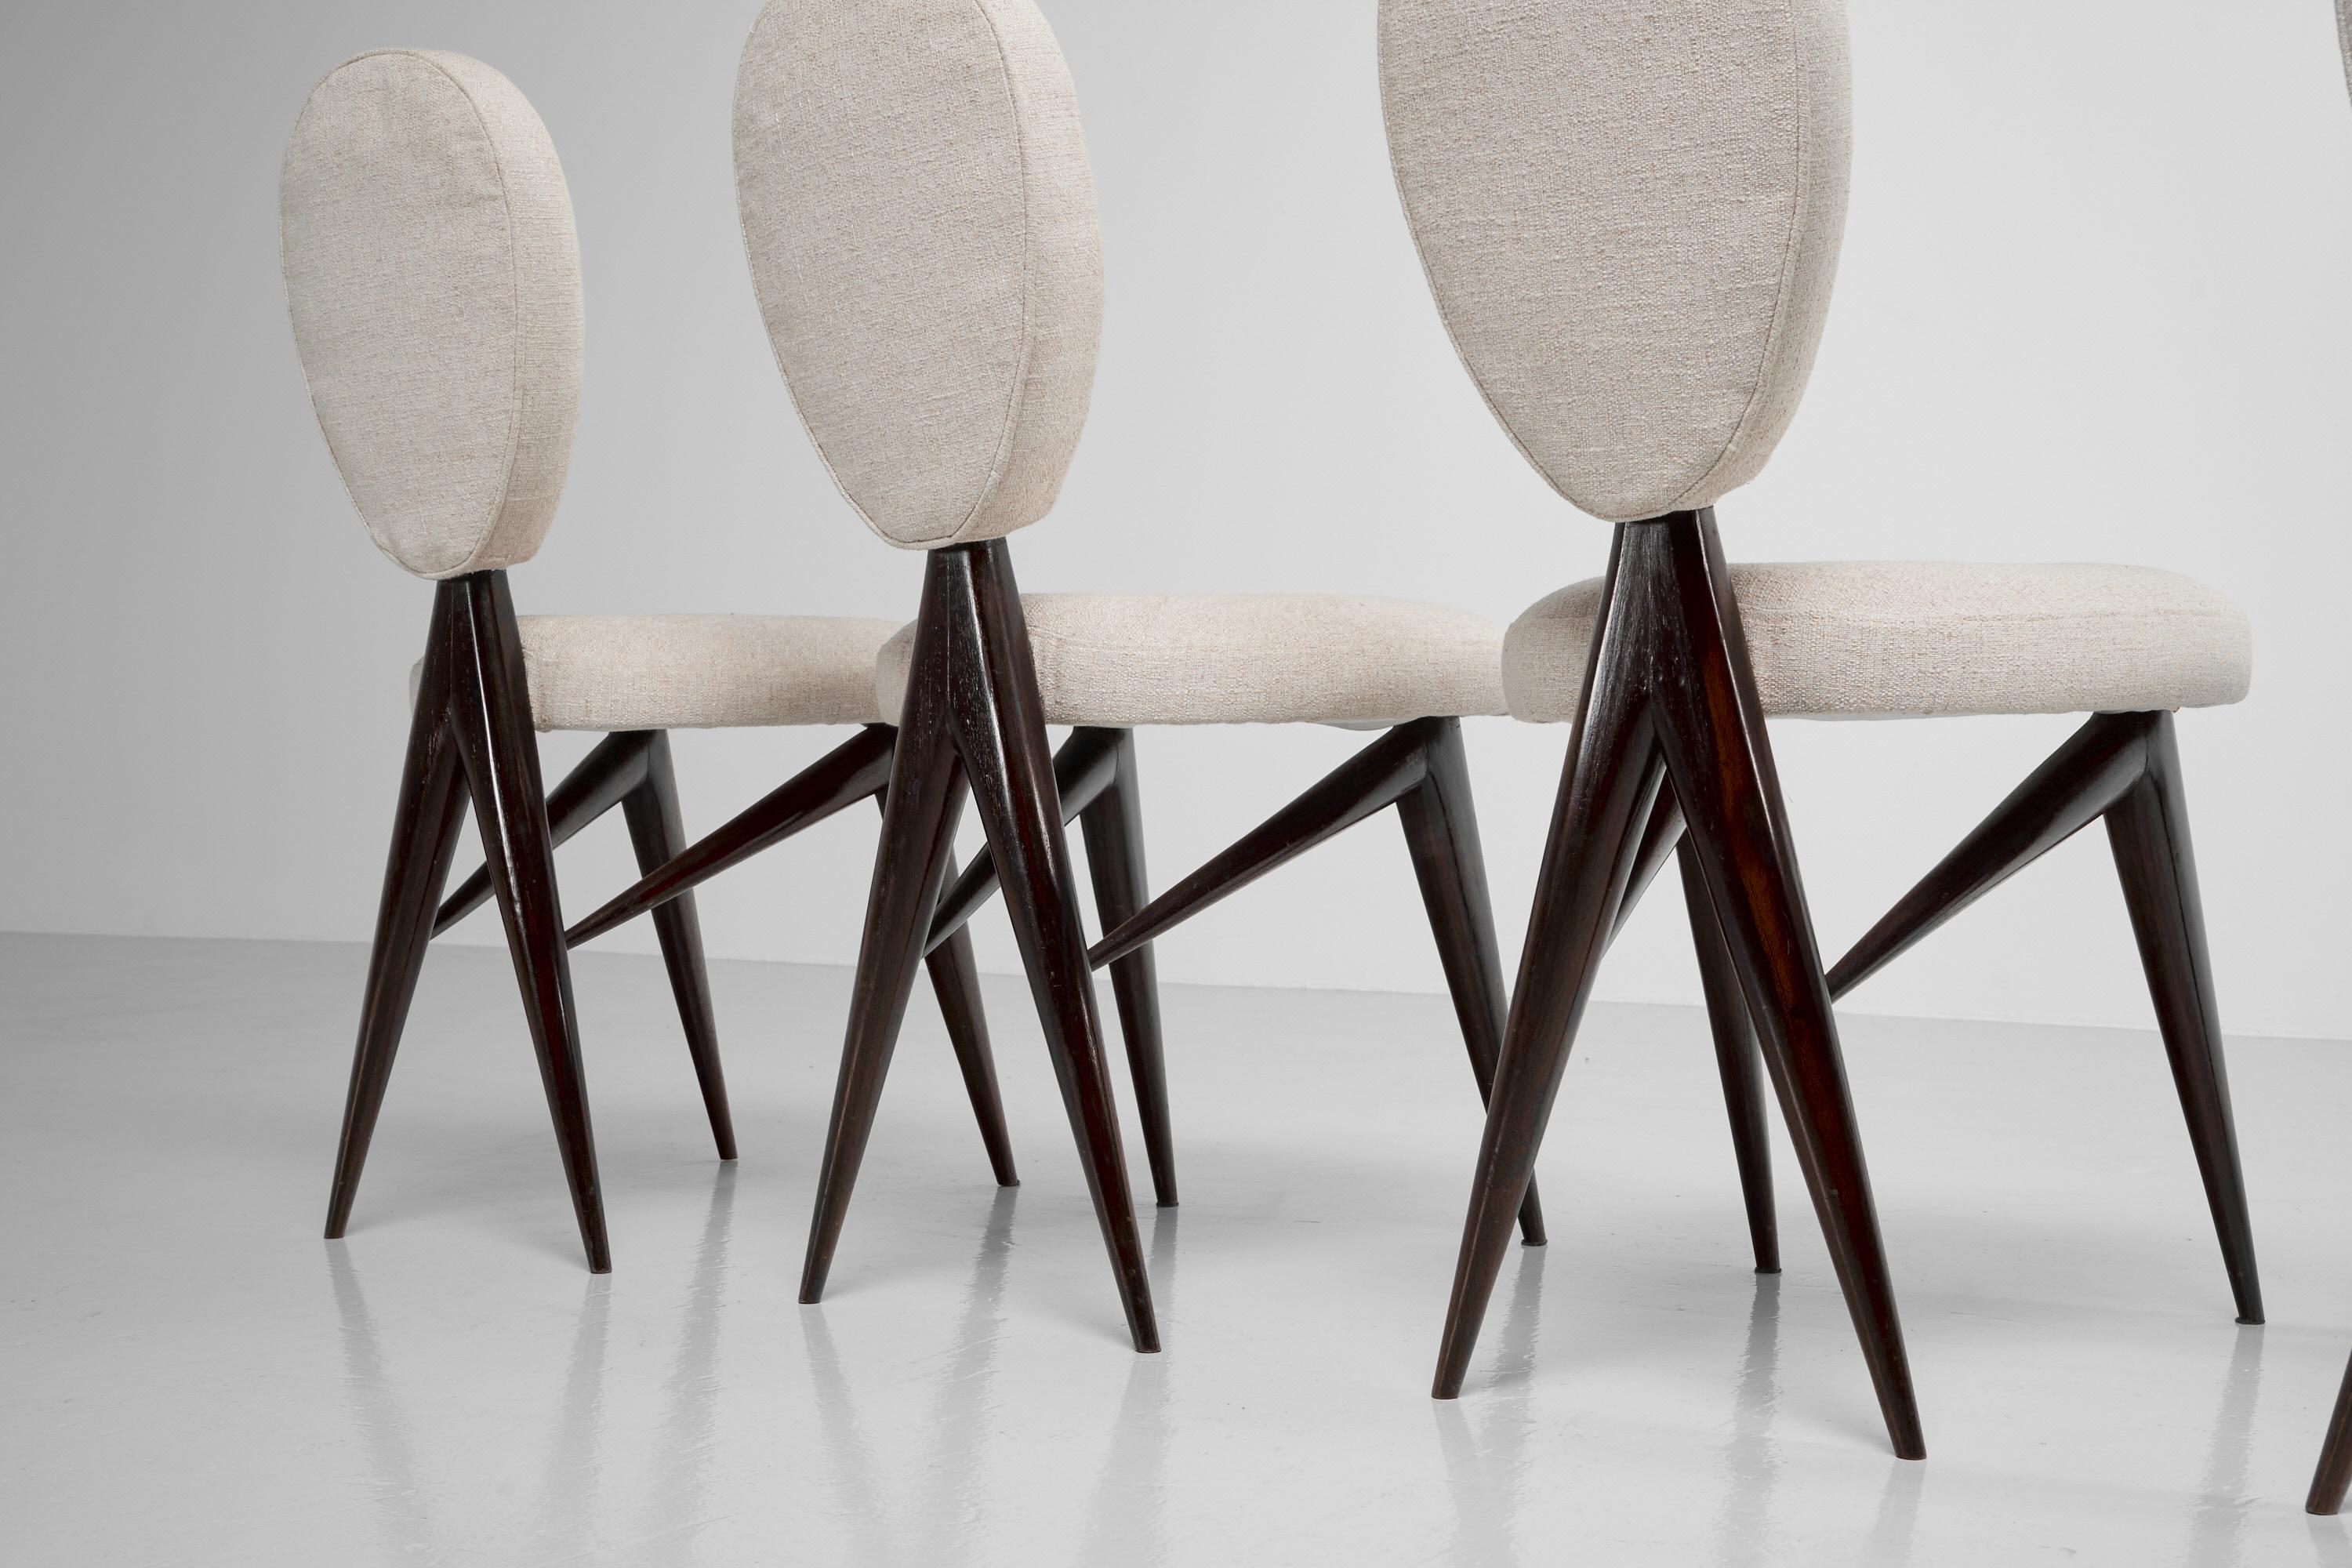 Découvrez ces extraordinaires chaises de salle à manger conçues par Giuseppe Scapinelli et fabriquées par sa propre entreprise Fábrica de Móveis Giesse au Brésil, 1950. Ces chaises incarnent véritablement la rareté et la sophistication. Ornées de